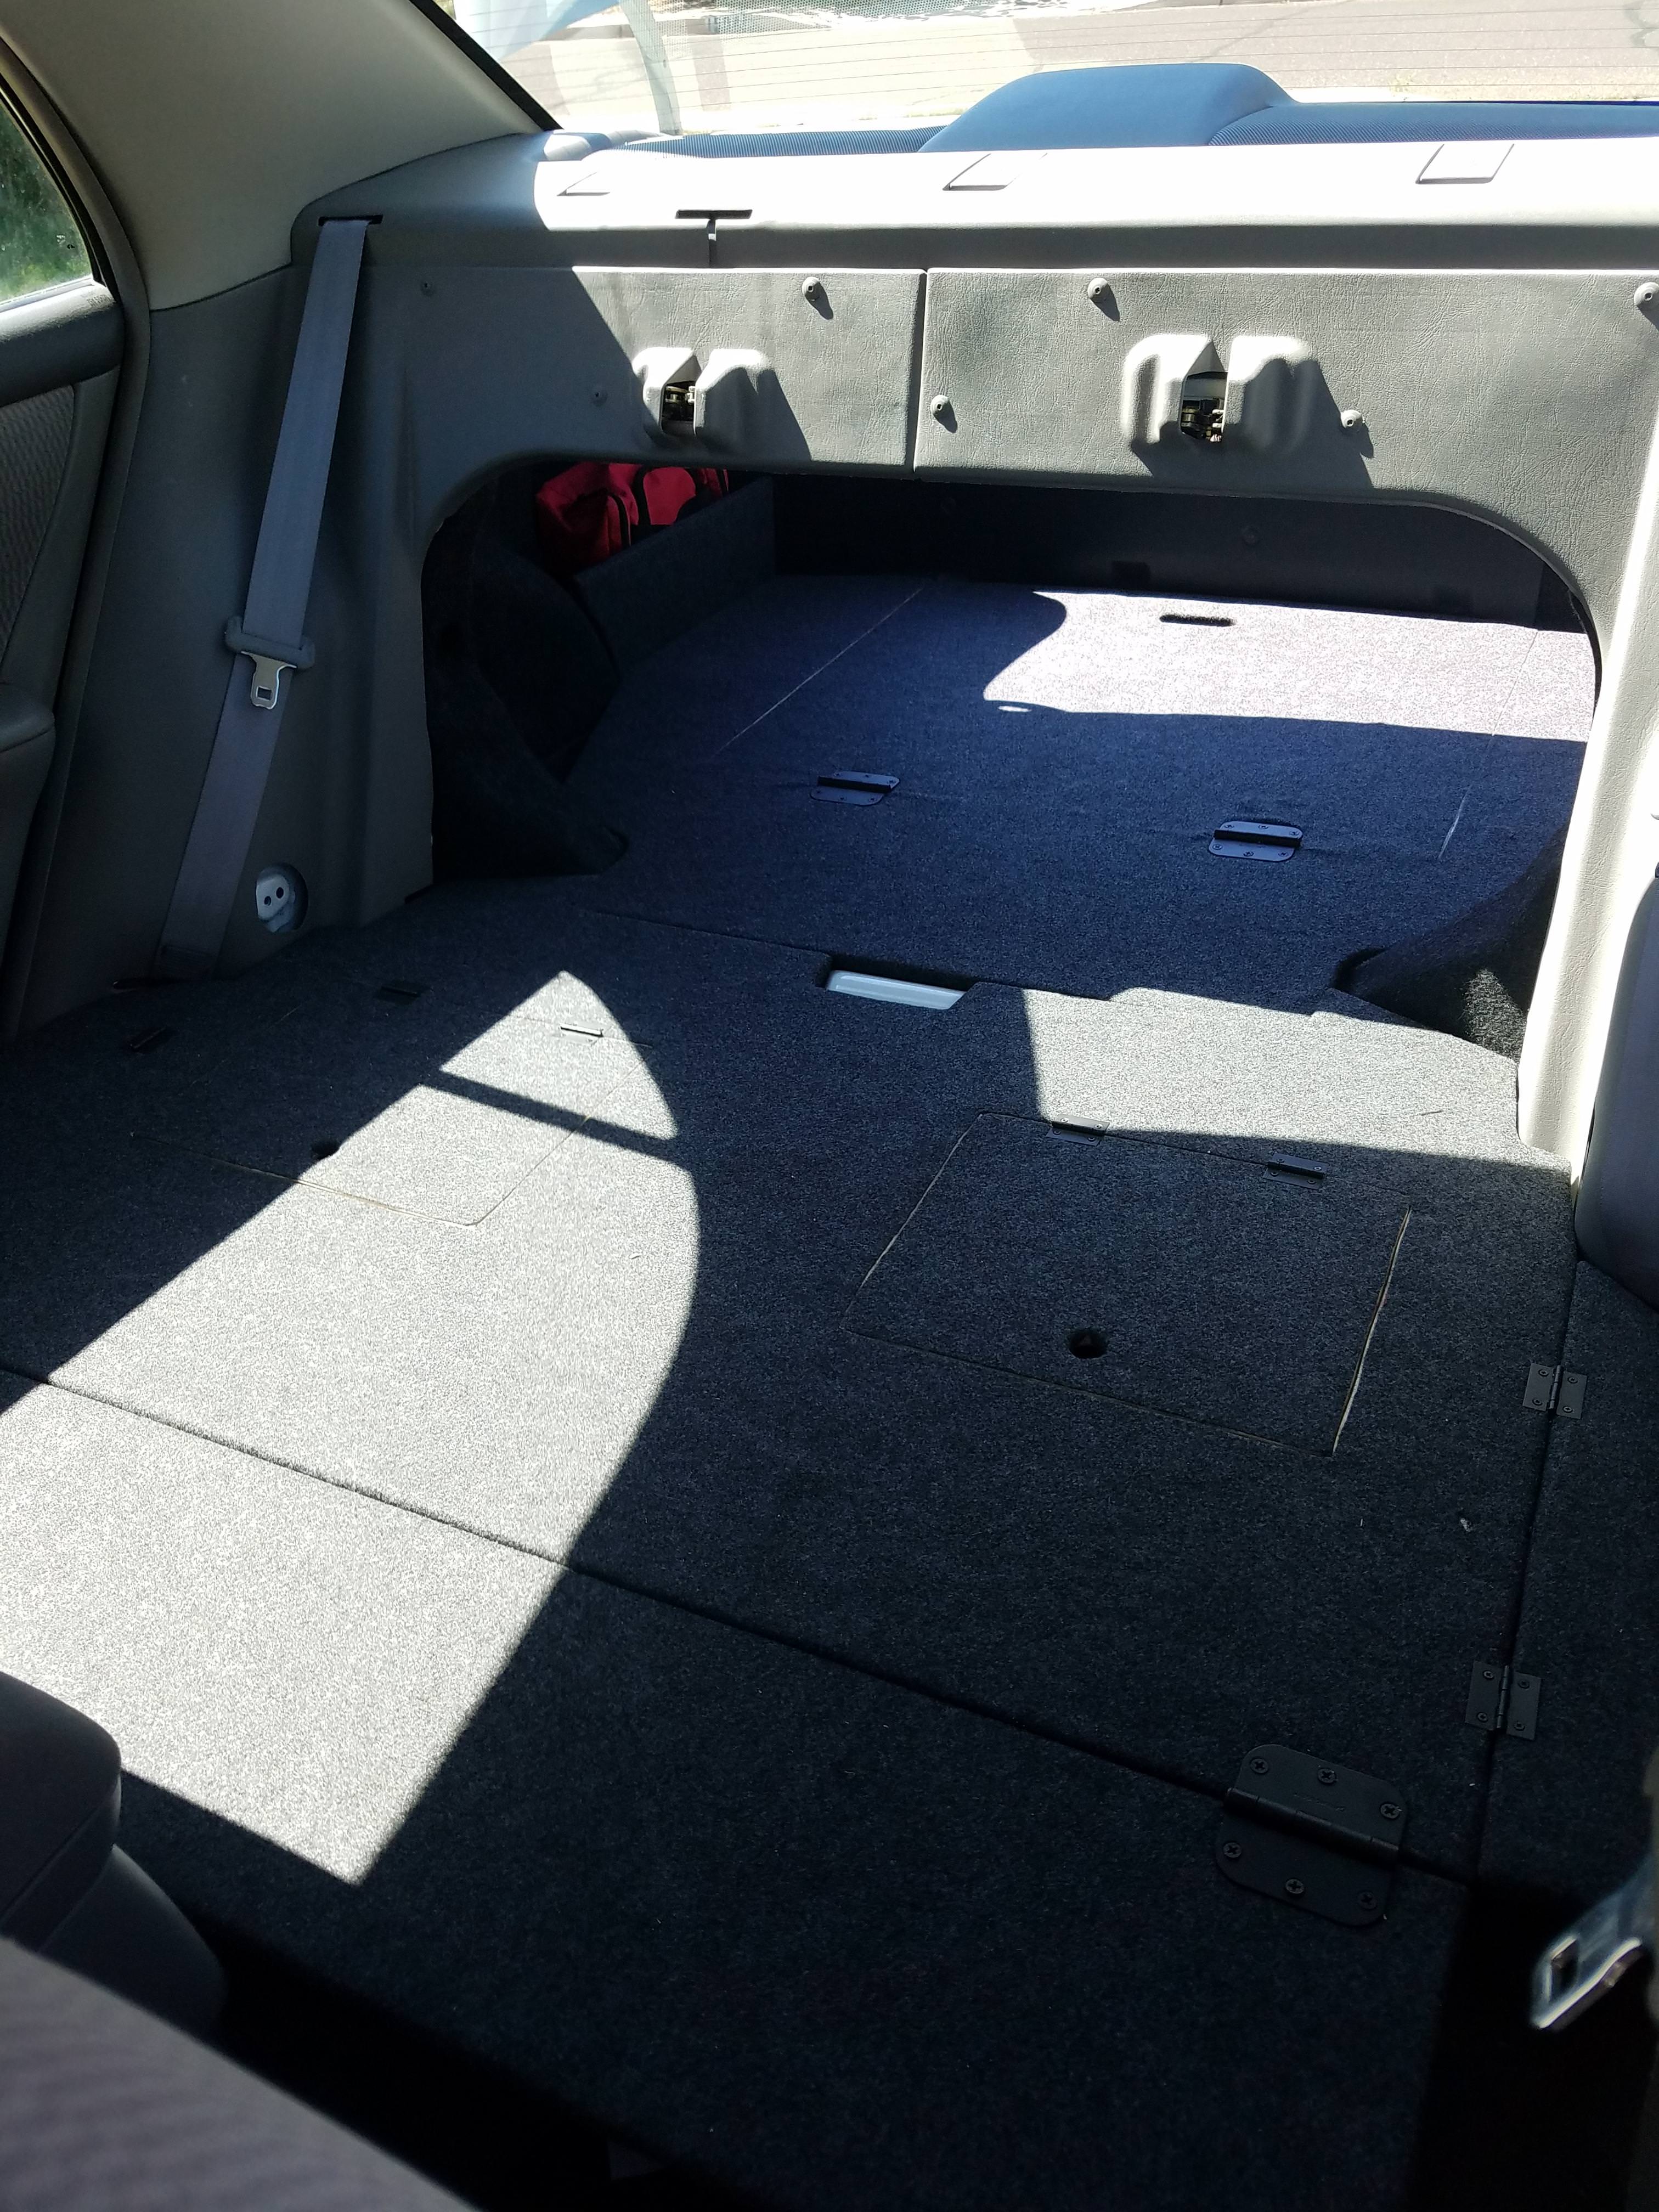 Toyota Corolla Back Seat Fold down 2021 